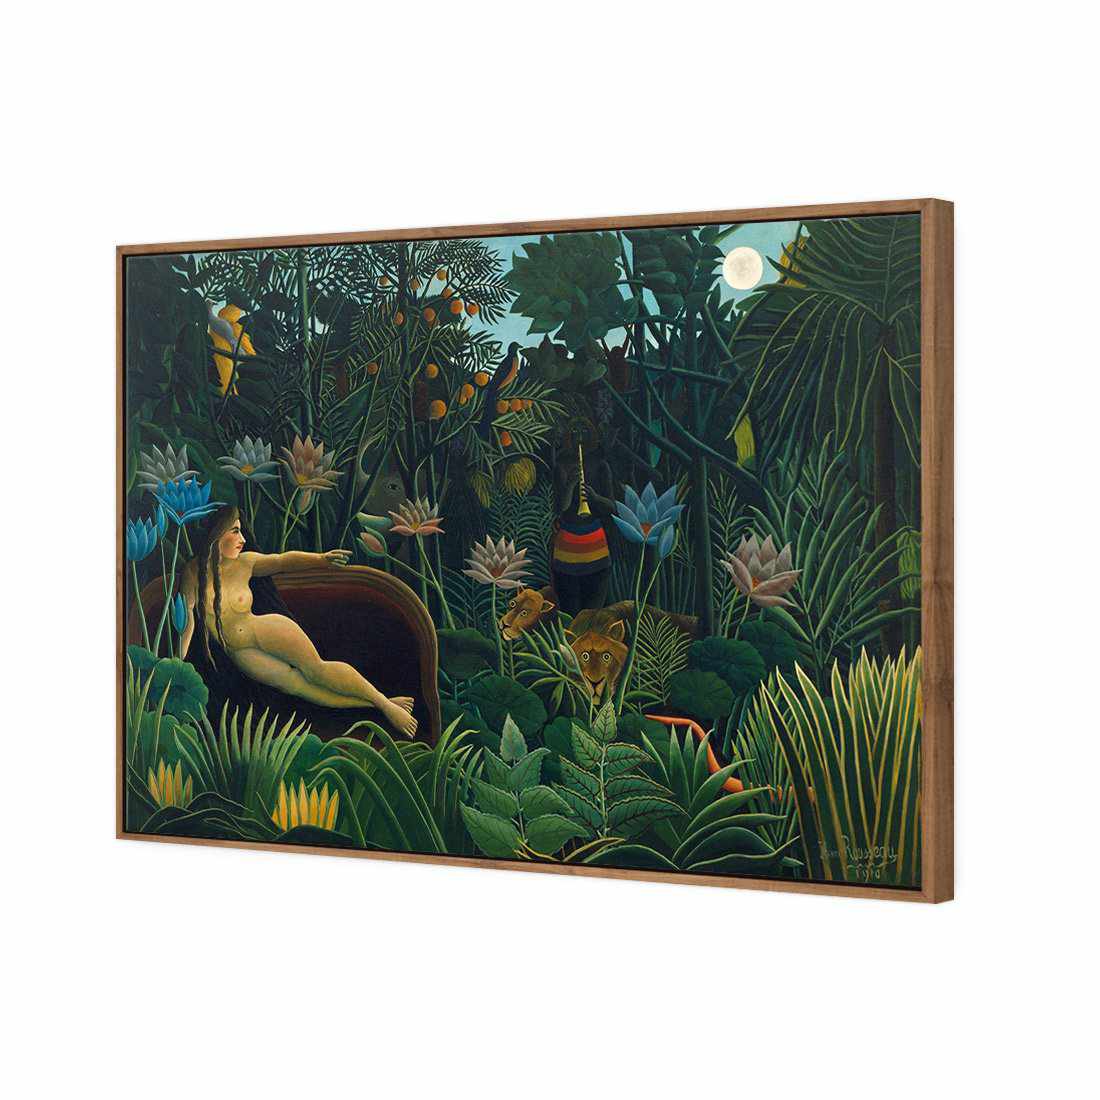 The Dream - Henri Rousseau Canvas Art-Canvas-Wall Art Designs-45x30cm-Canvas - Natural Frame-Wall Art Designs